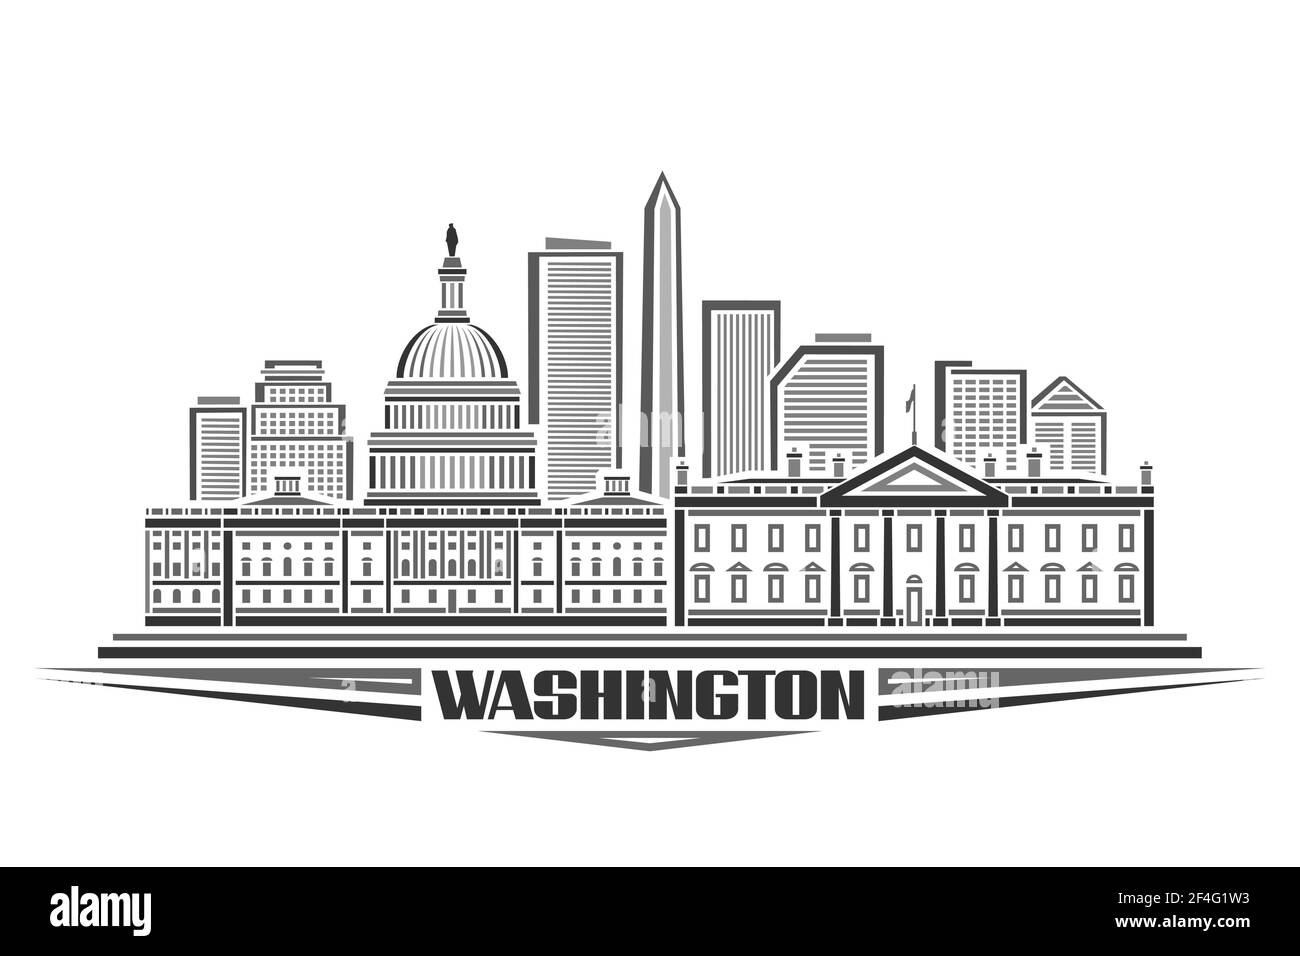 Illustrazione vettoriale di Washington, poster orizzontale monocromatico con design del paesaggio urbano di washington, concetto urbano con stile decorativo unico Illustrazione Vettoriale